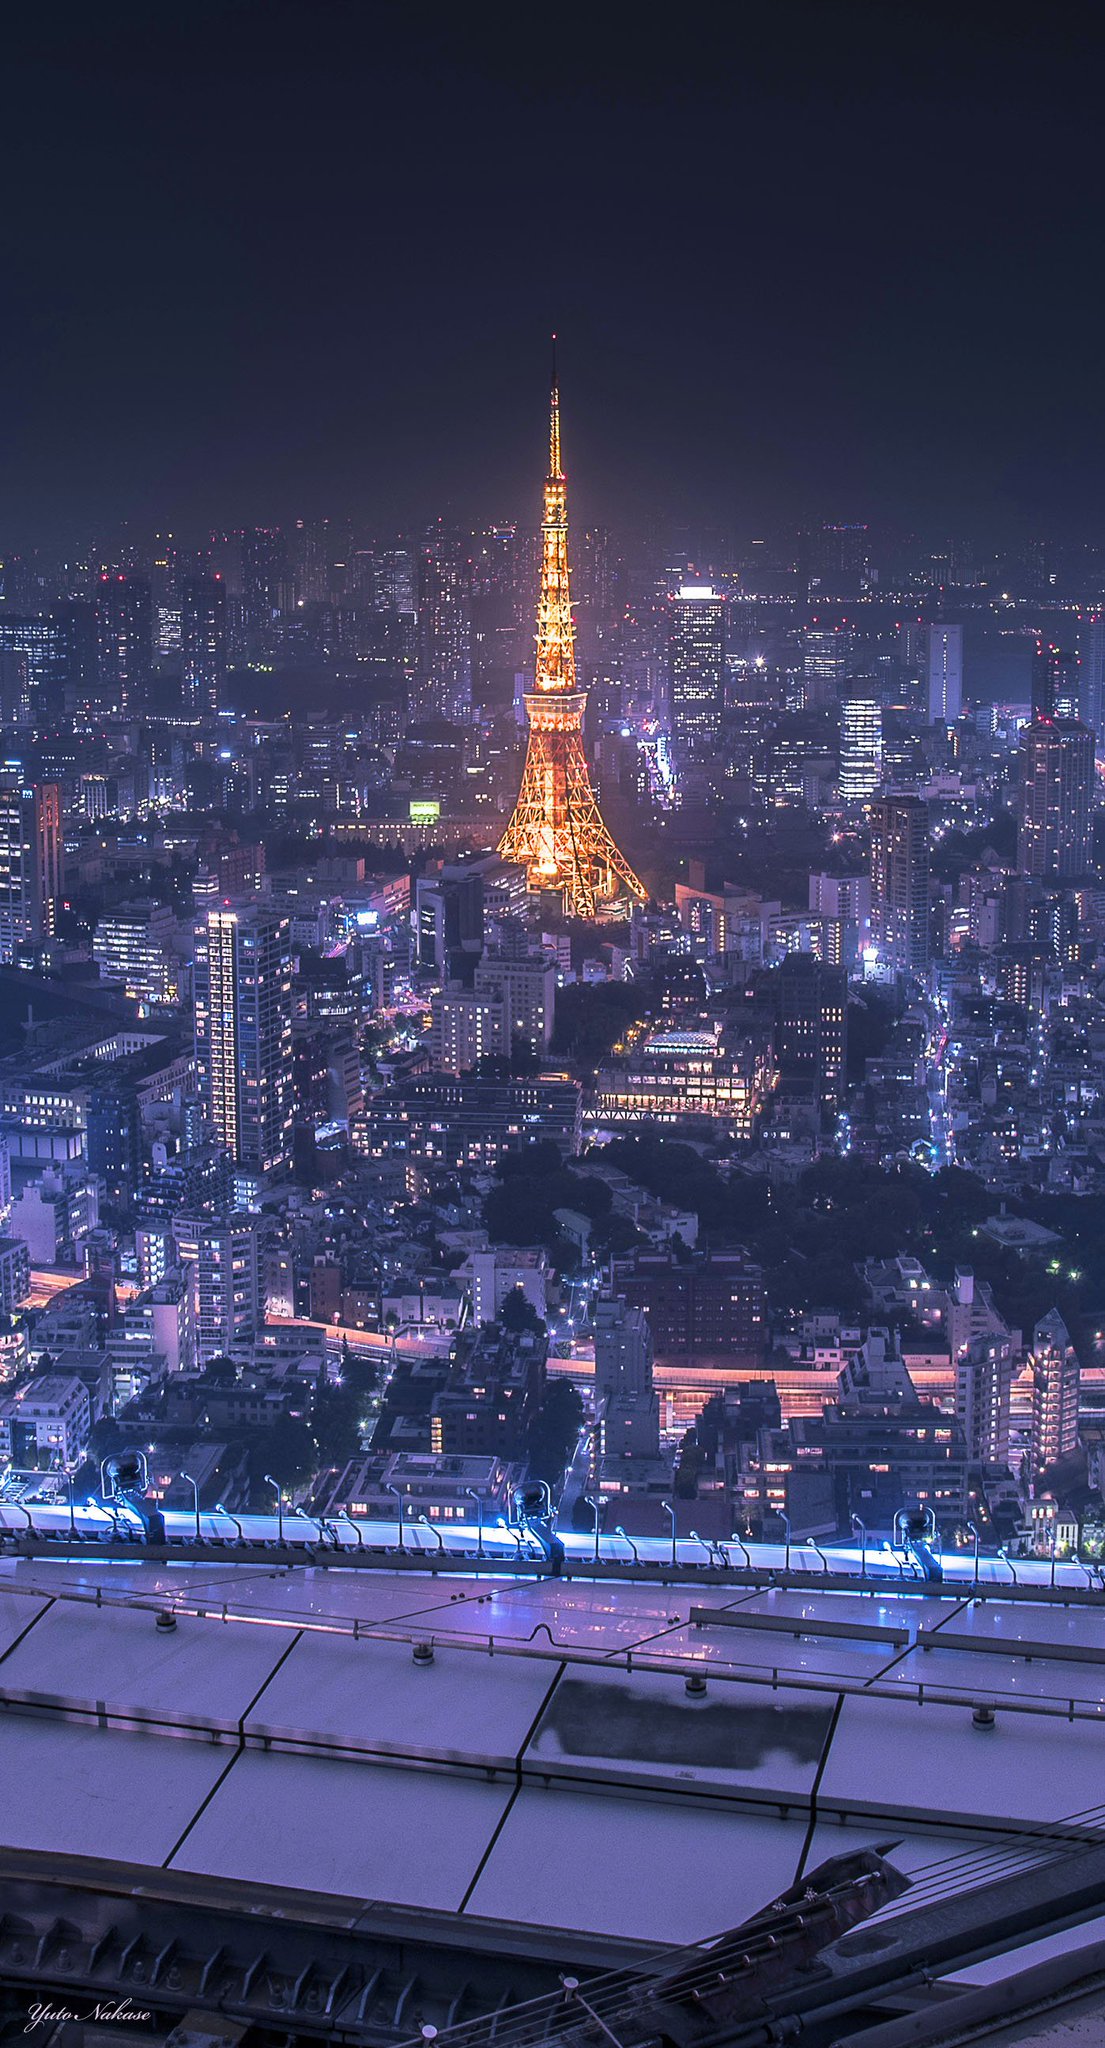 中瀬雄登 Yuto Nakase 写真家 東京タワー大好きです 六本木ヒルズからと晴海ふ頭からの夜景です スマホの 壁紙として使用できるサイズです Iphone壁紙 ニッポンを撮る 東京タワー 六本木ヒルズ 晴海ふ頭 夜景 T Co